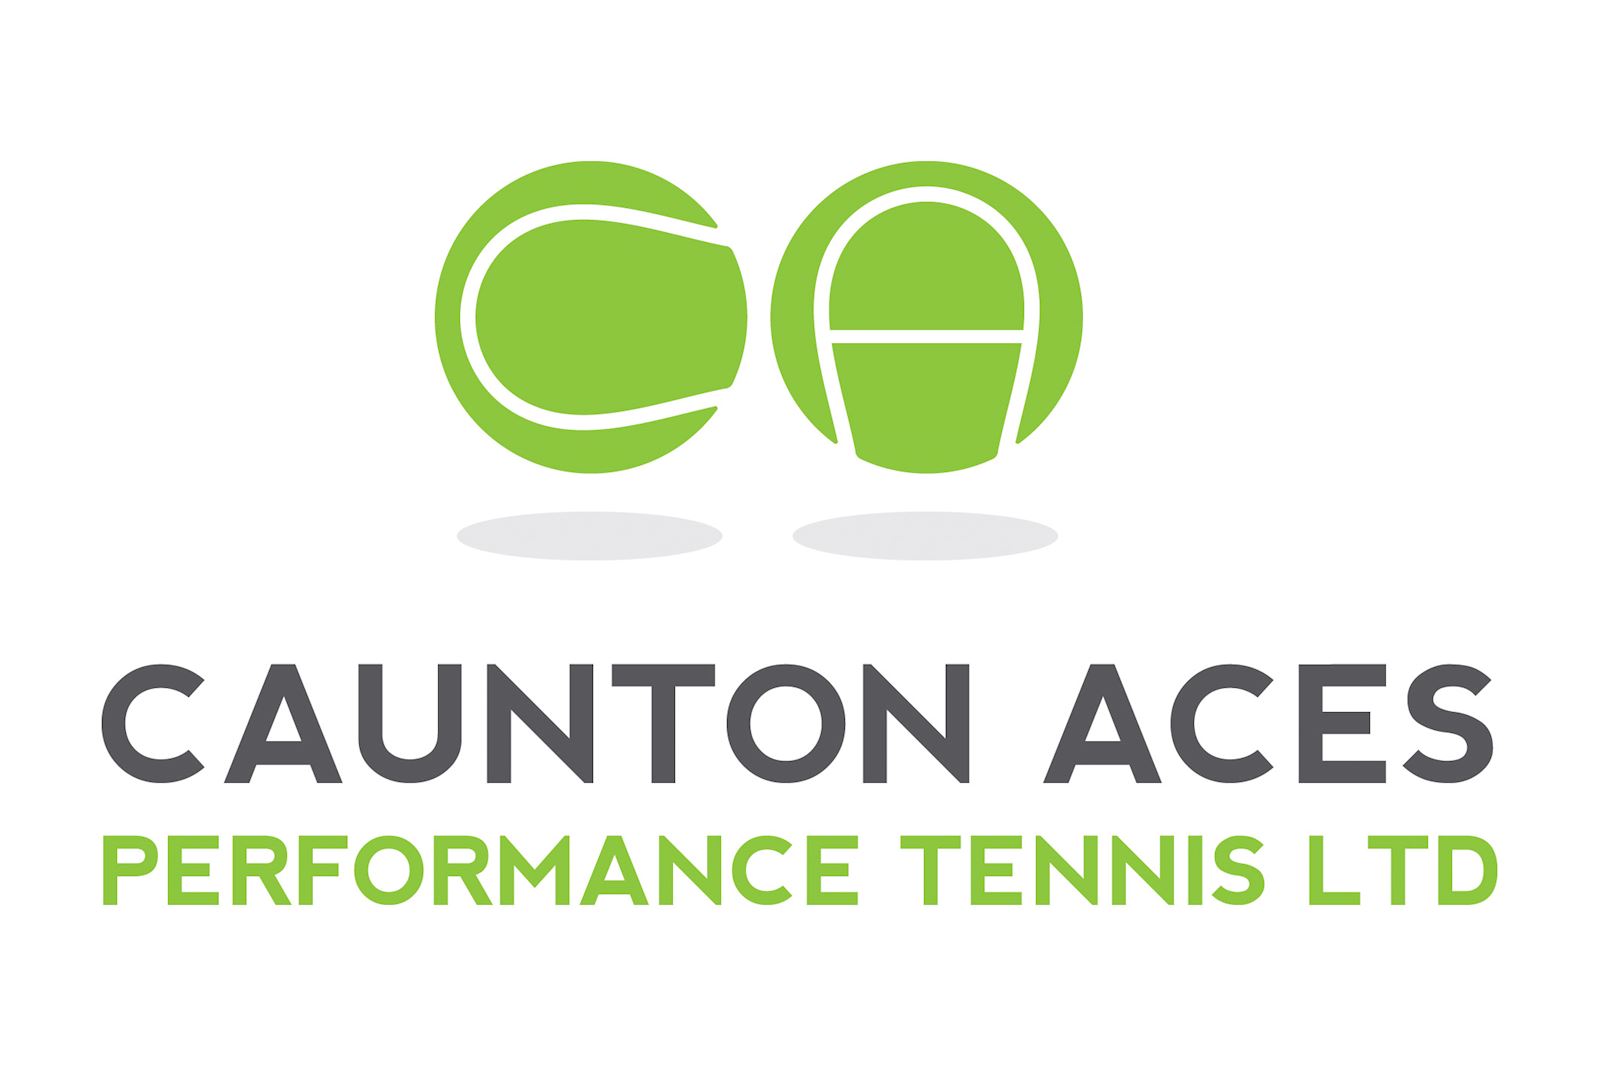 Caunton Aces Performance Tennis